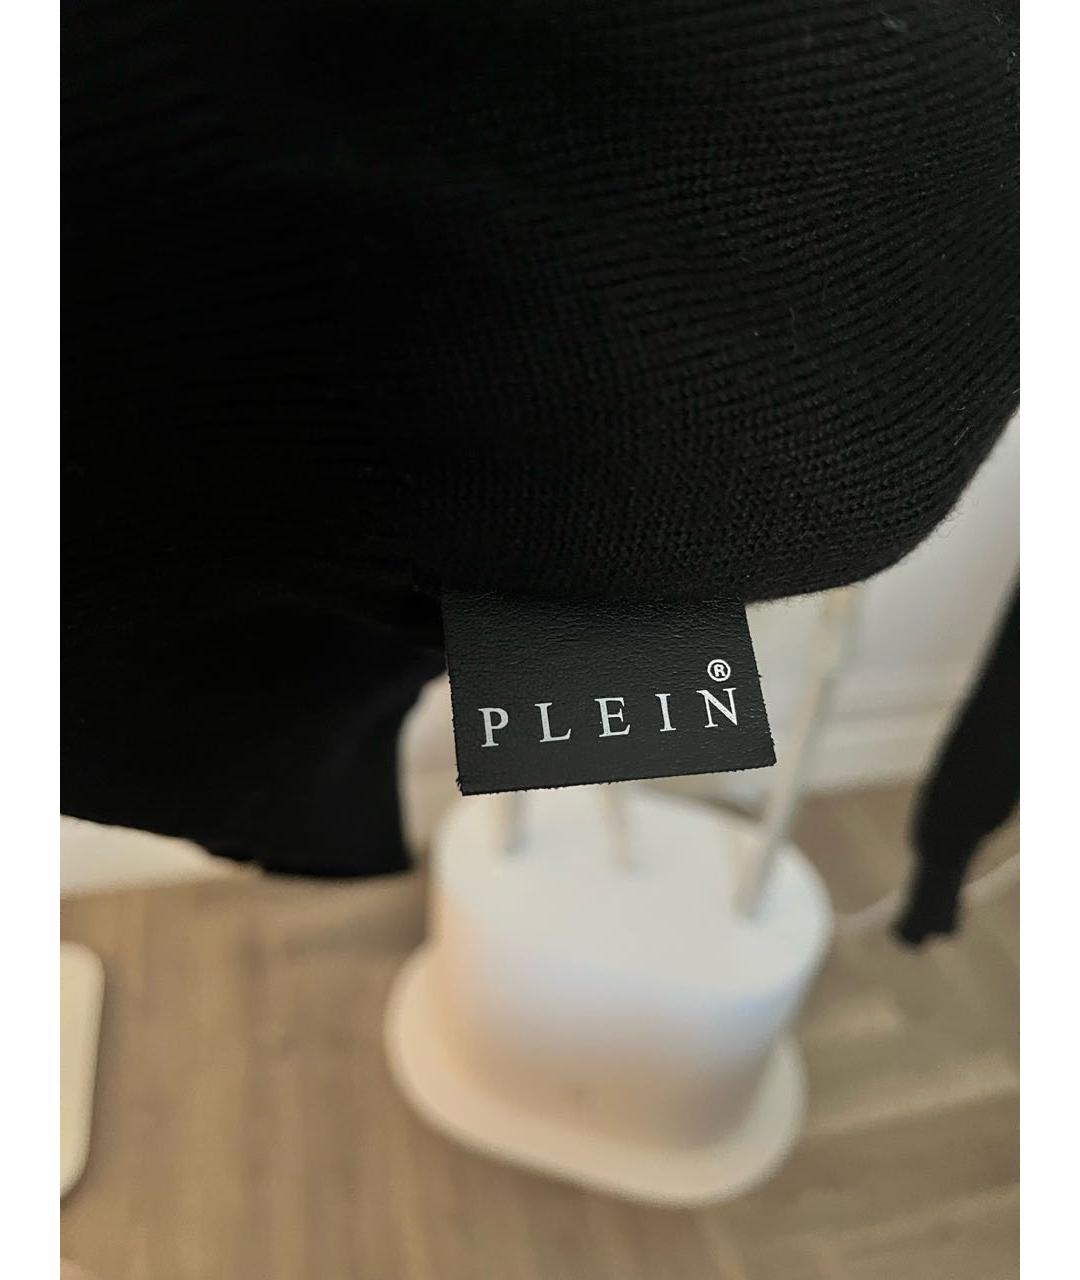 PHILIPP PLEIN Черный шерстяной джемпер / свитер, фото 5